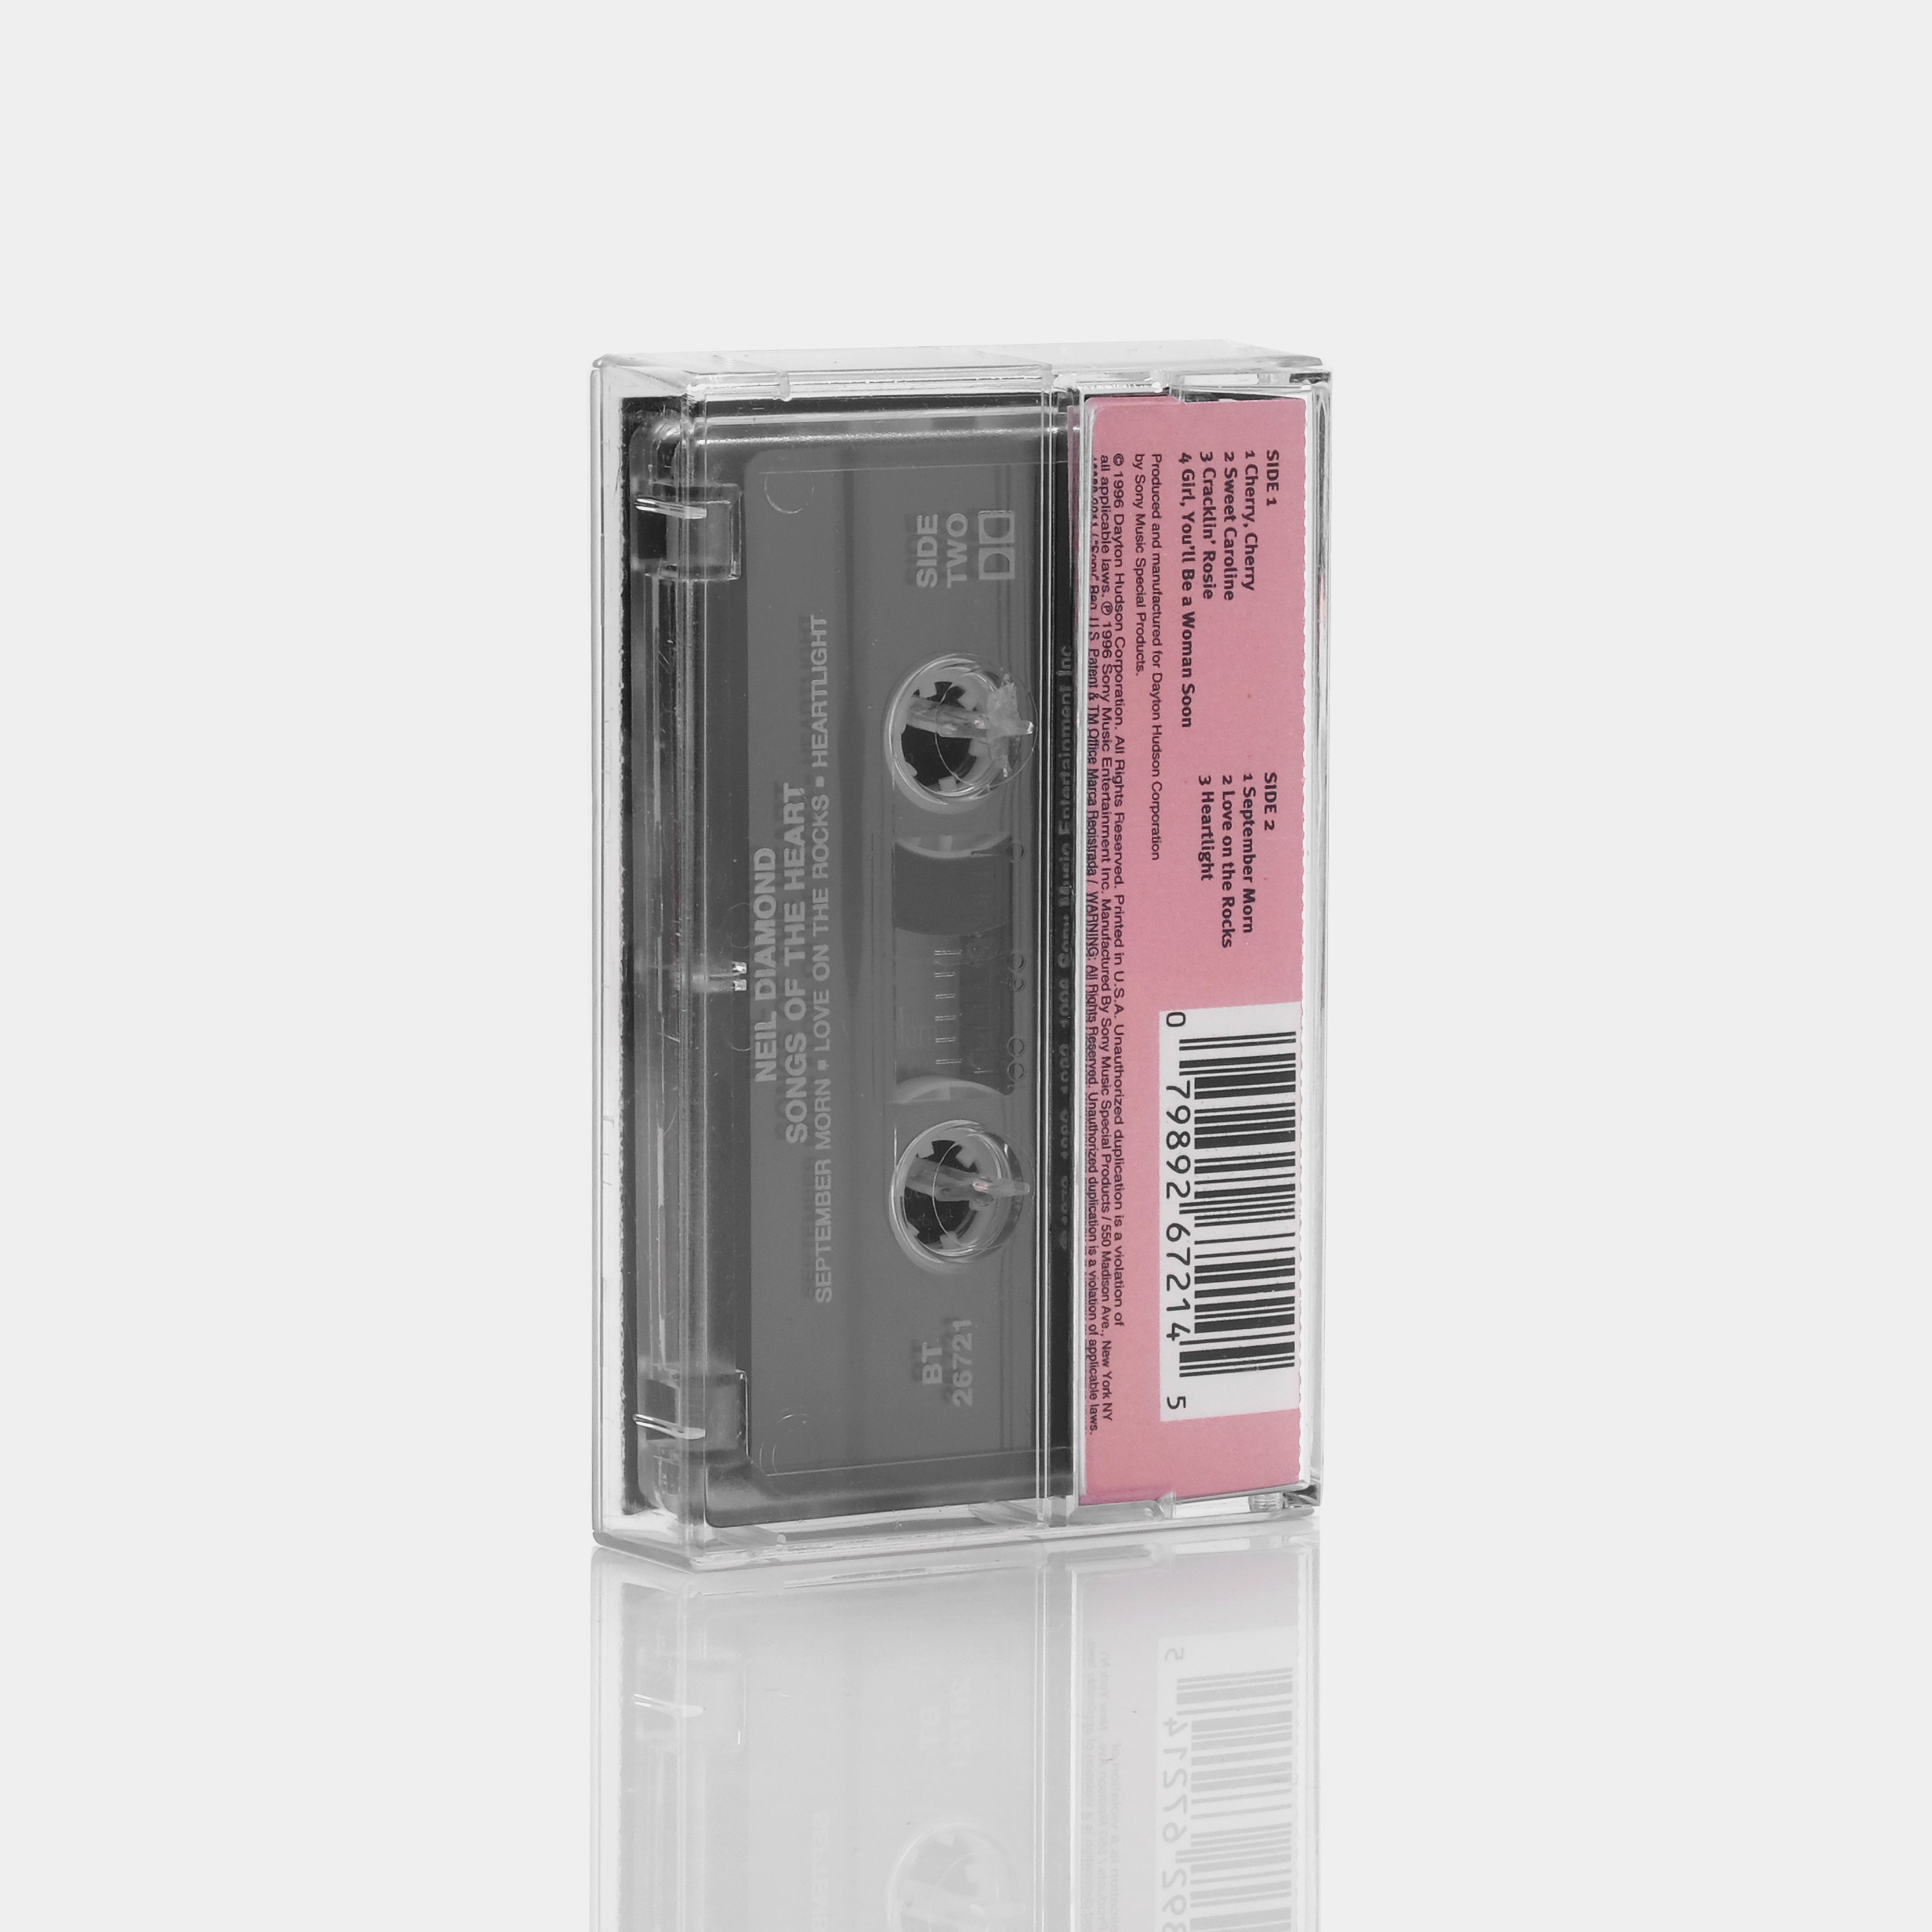 Neil Diamond - Songs Of The Heart Cassette Tape